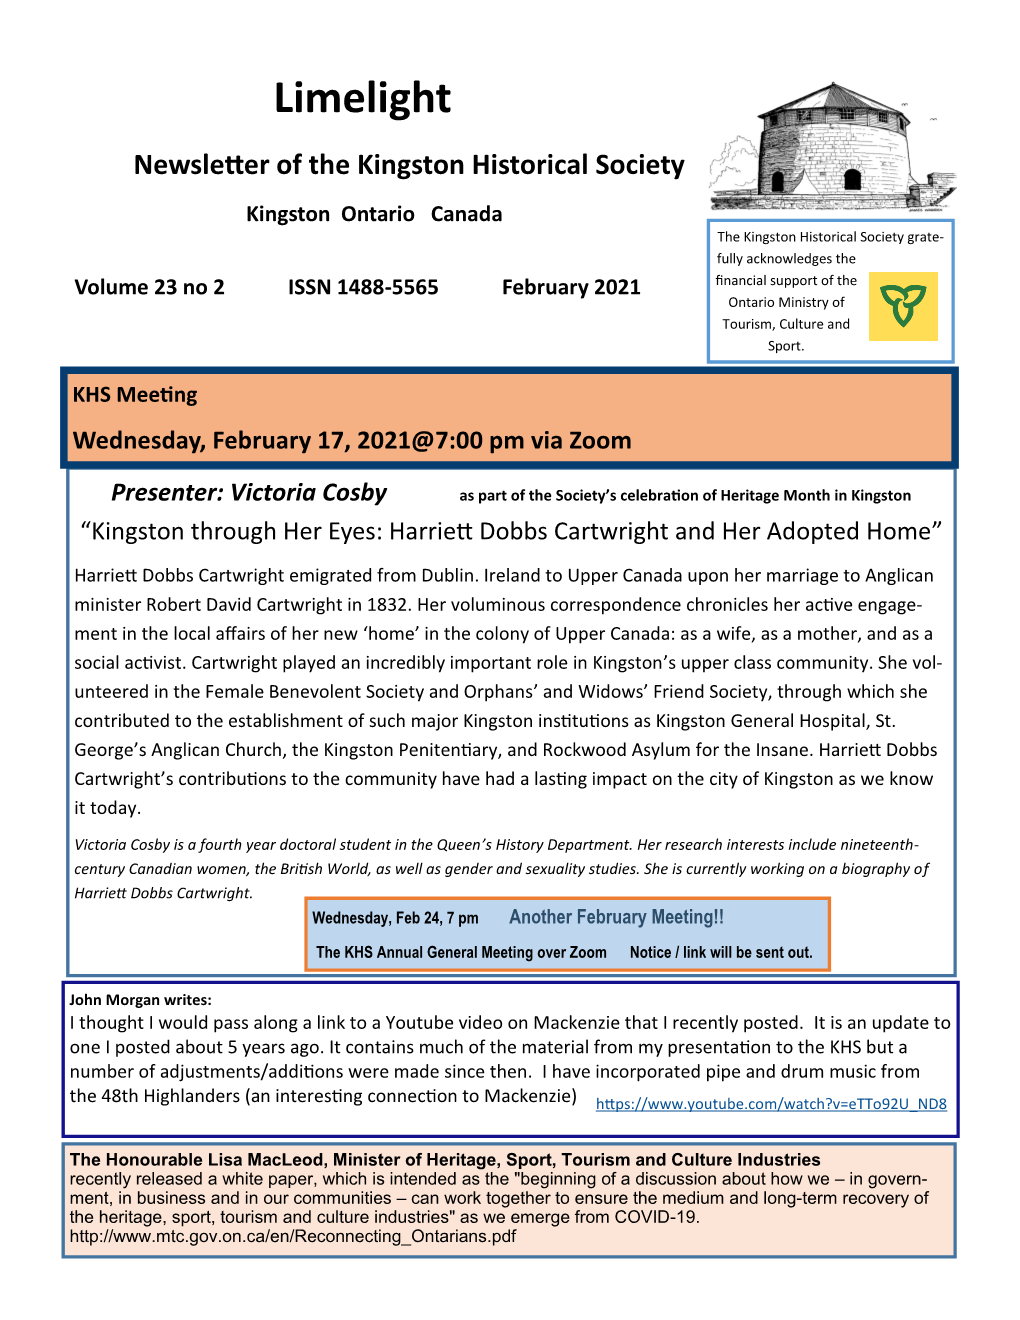 Limelight Newsletter of the Kingston Historical Society